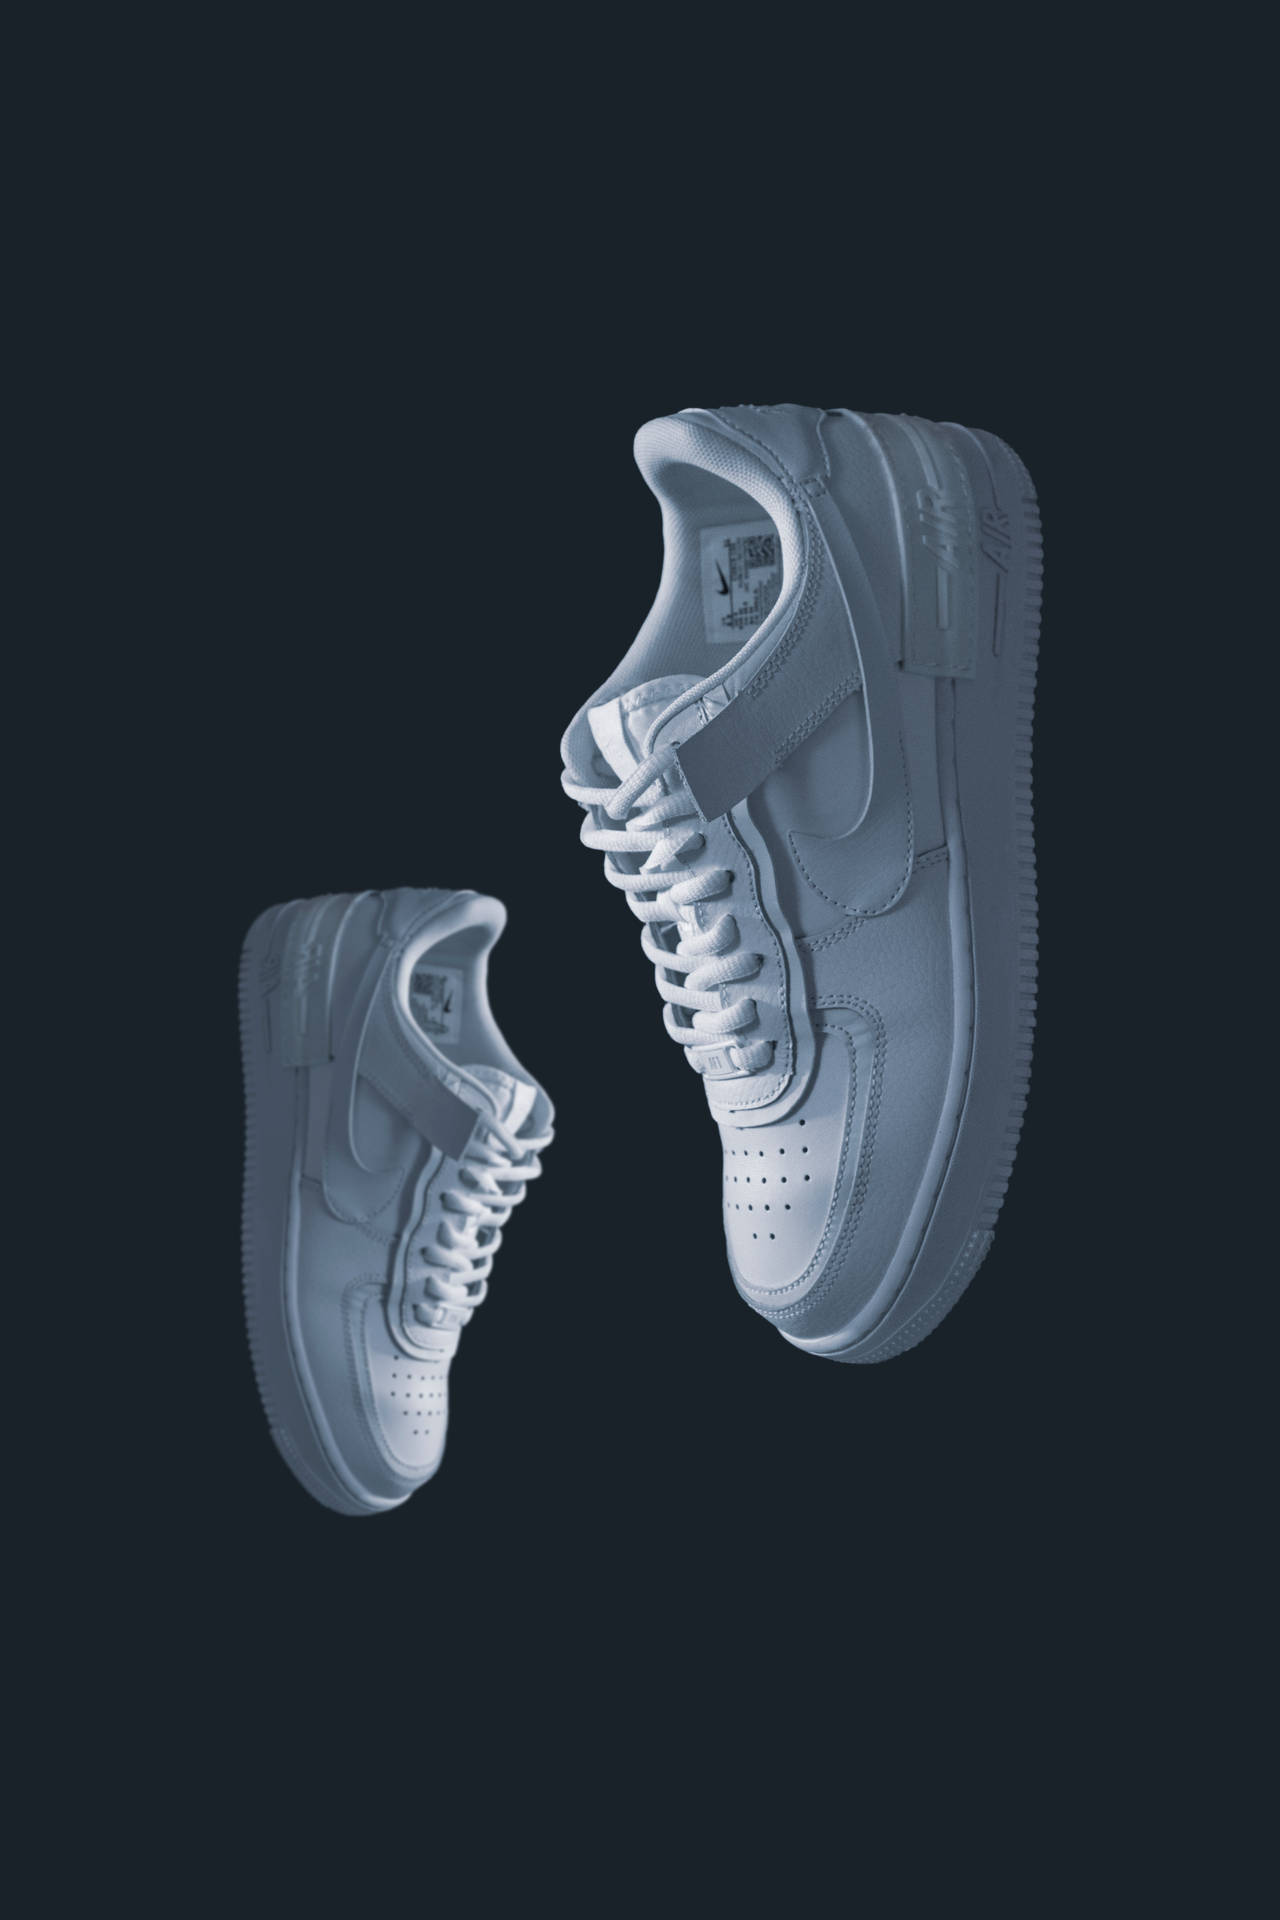 4k White Nike Shoes Image